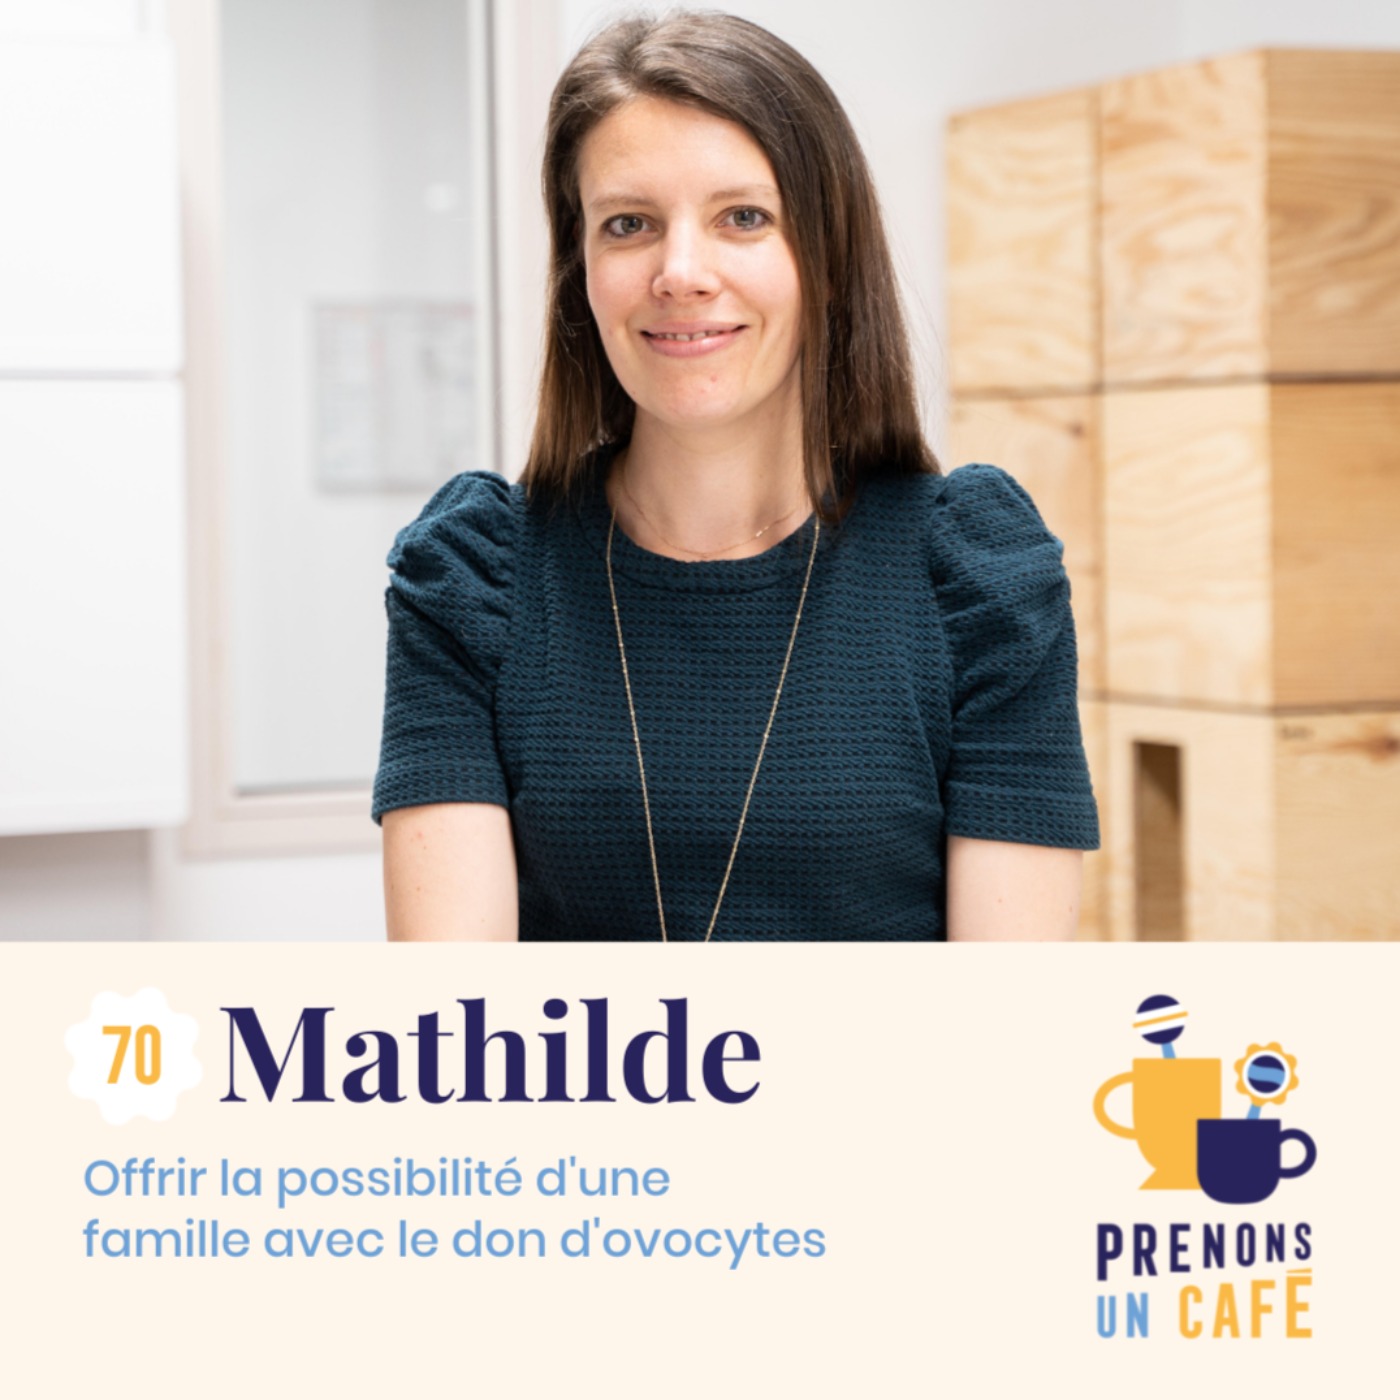 Mathilde - Offrir la possibilité d'une famille avec le don d'ovocytes